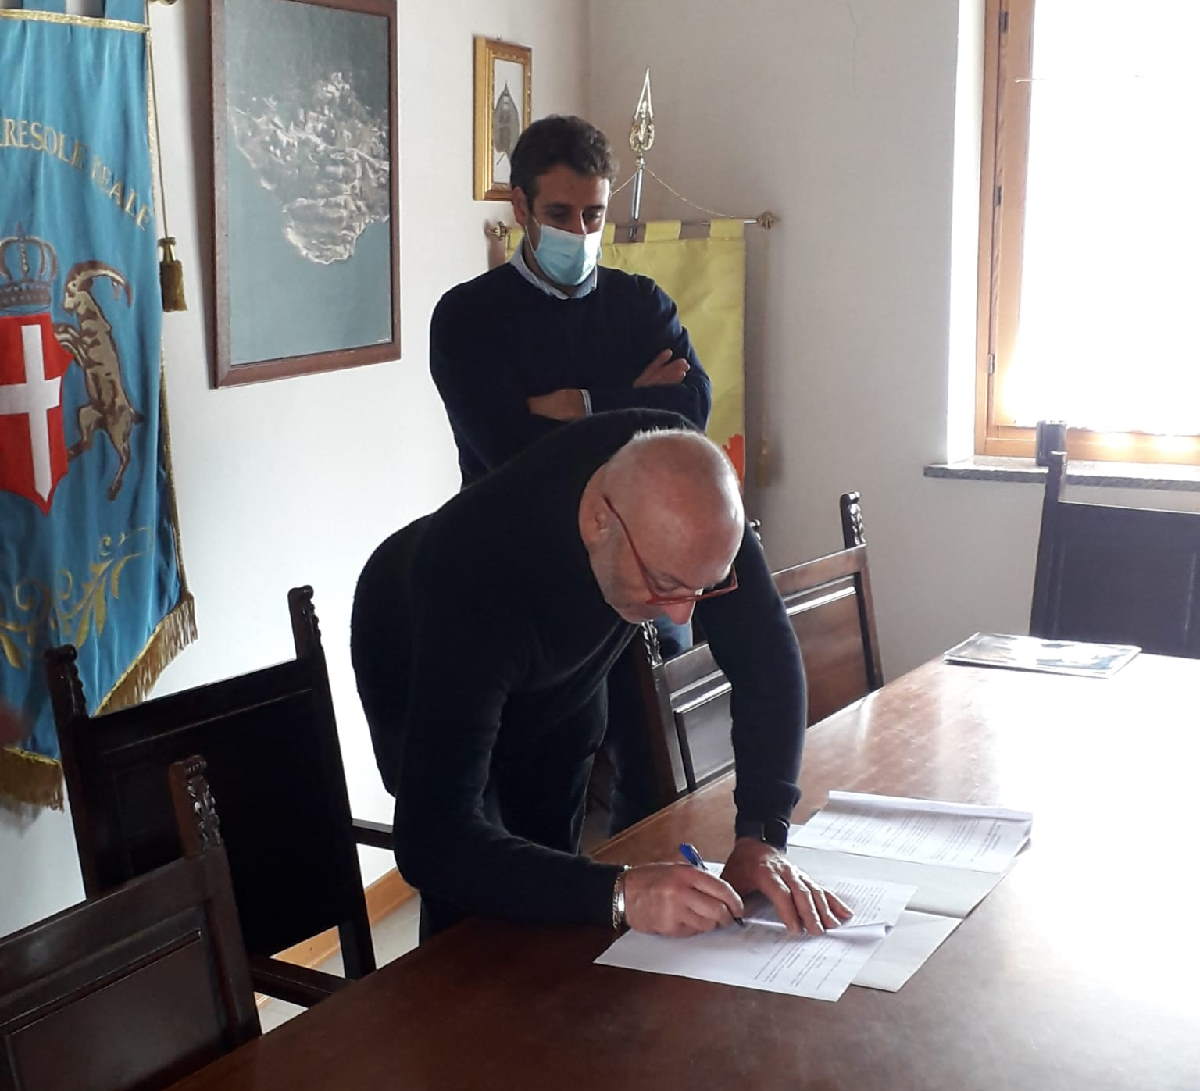 CERESOLE REALE – Firmata una convenzione tra il Comune e il Coro Polifonico Città di Rivarolo